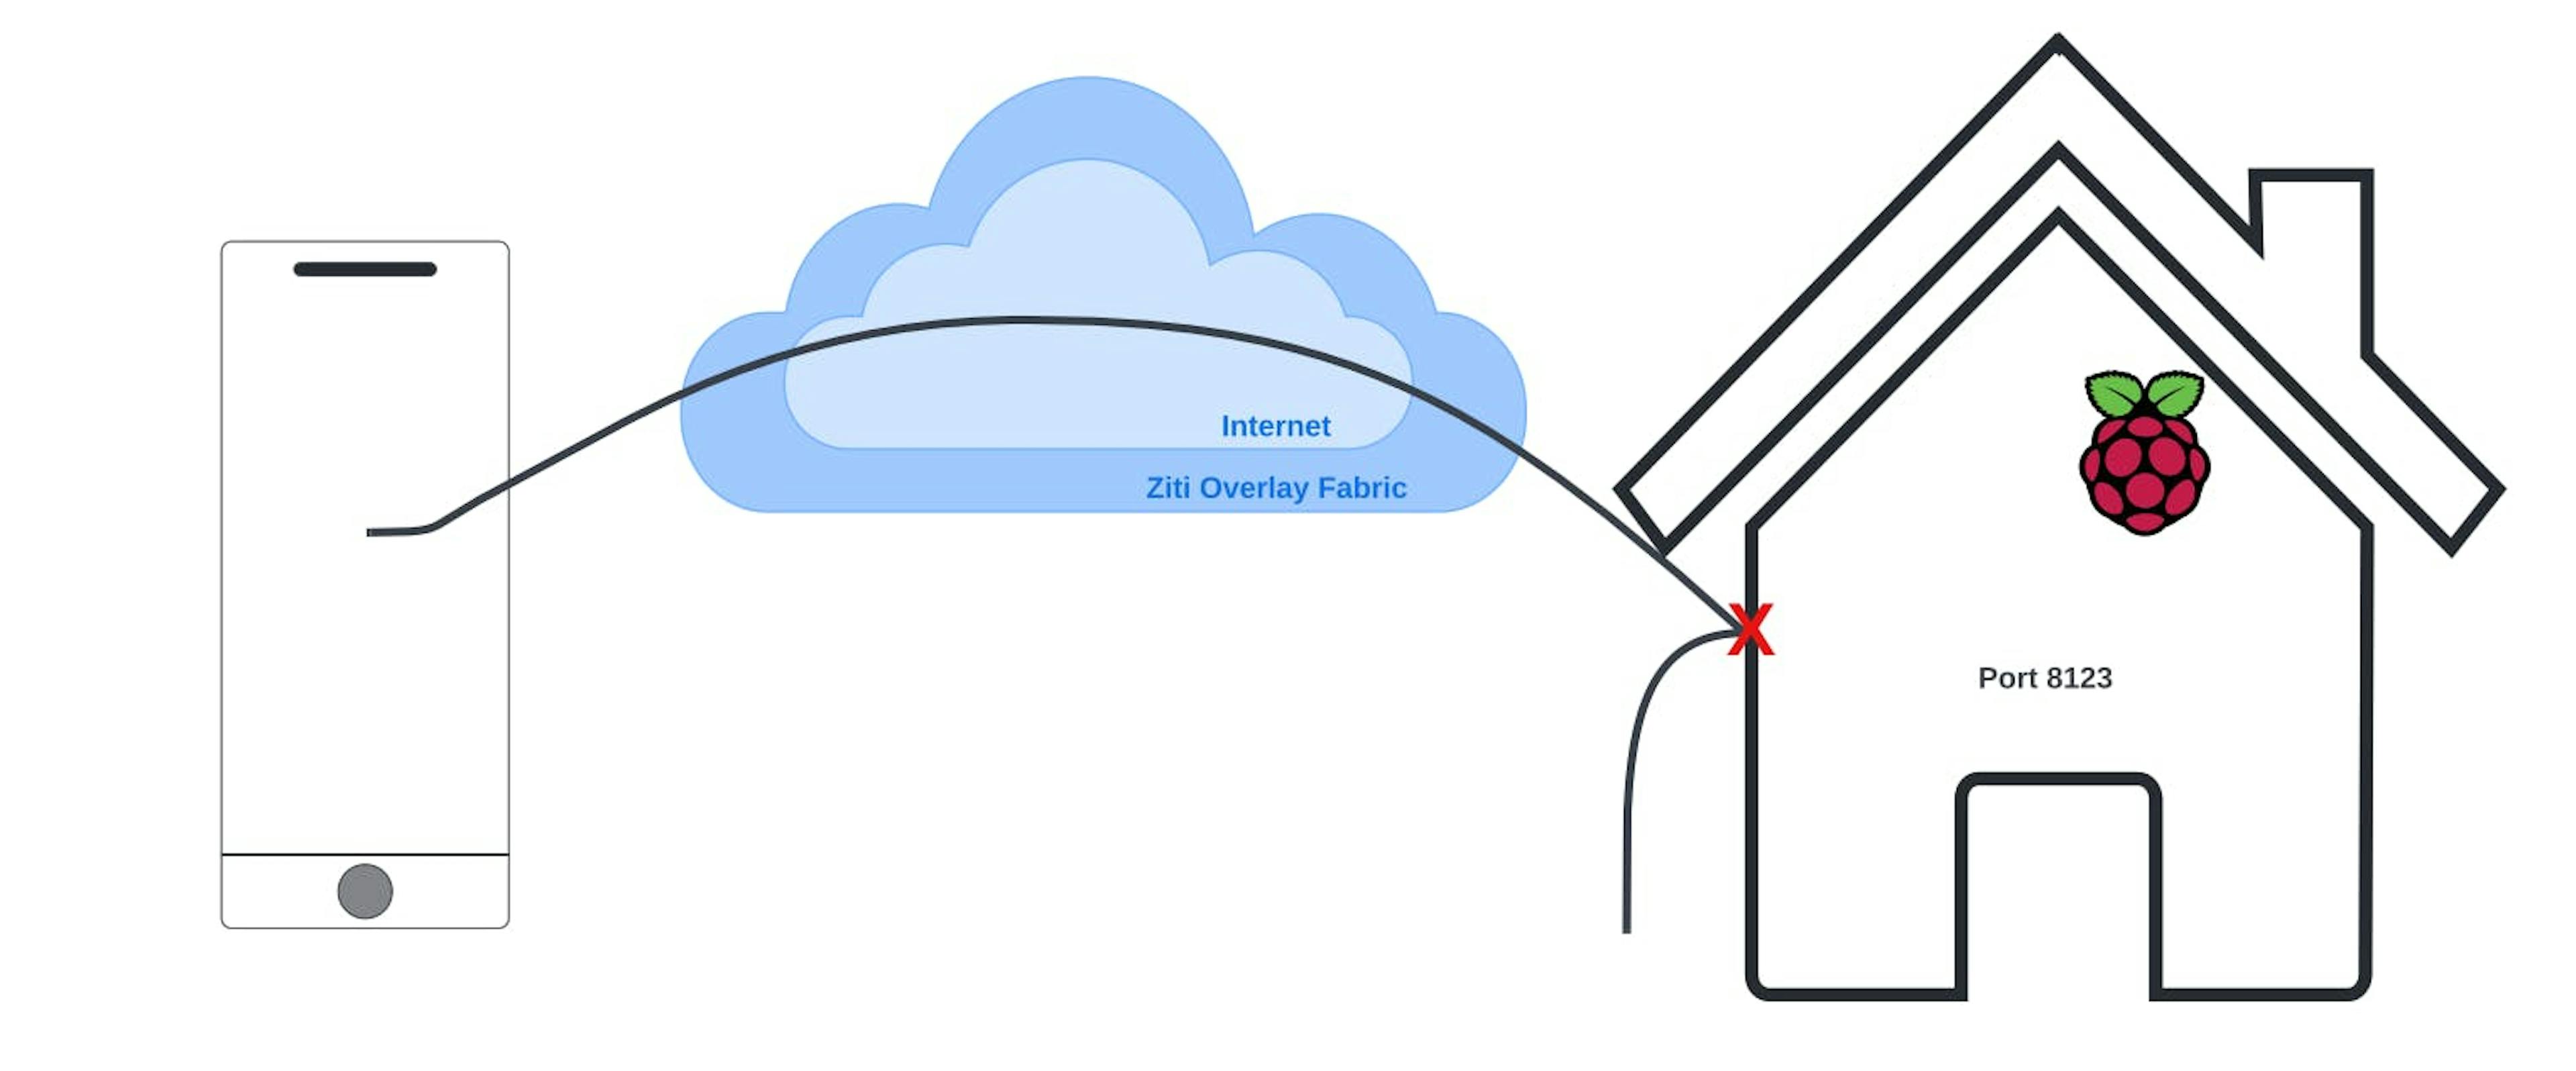 OpenZiti HomeAssistant Network Architecture - Without Ziti